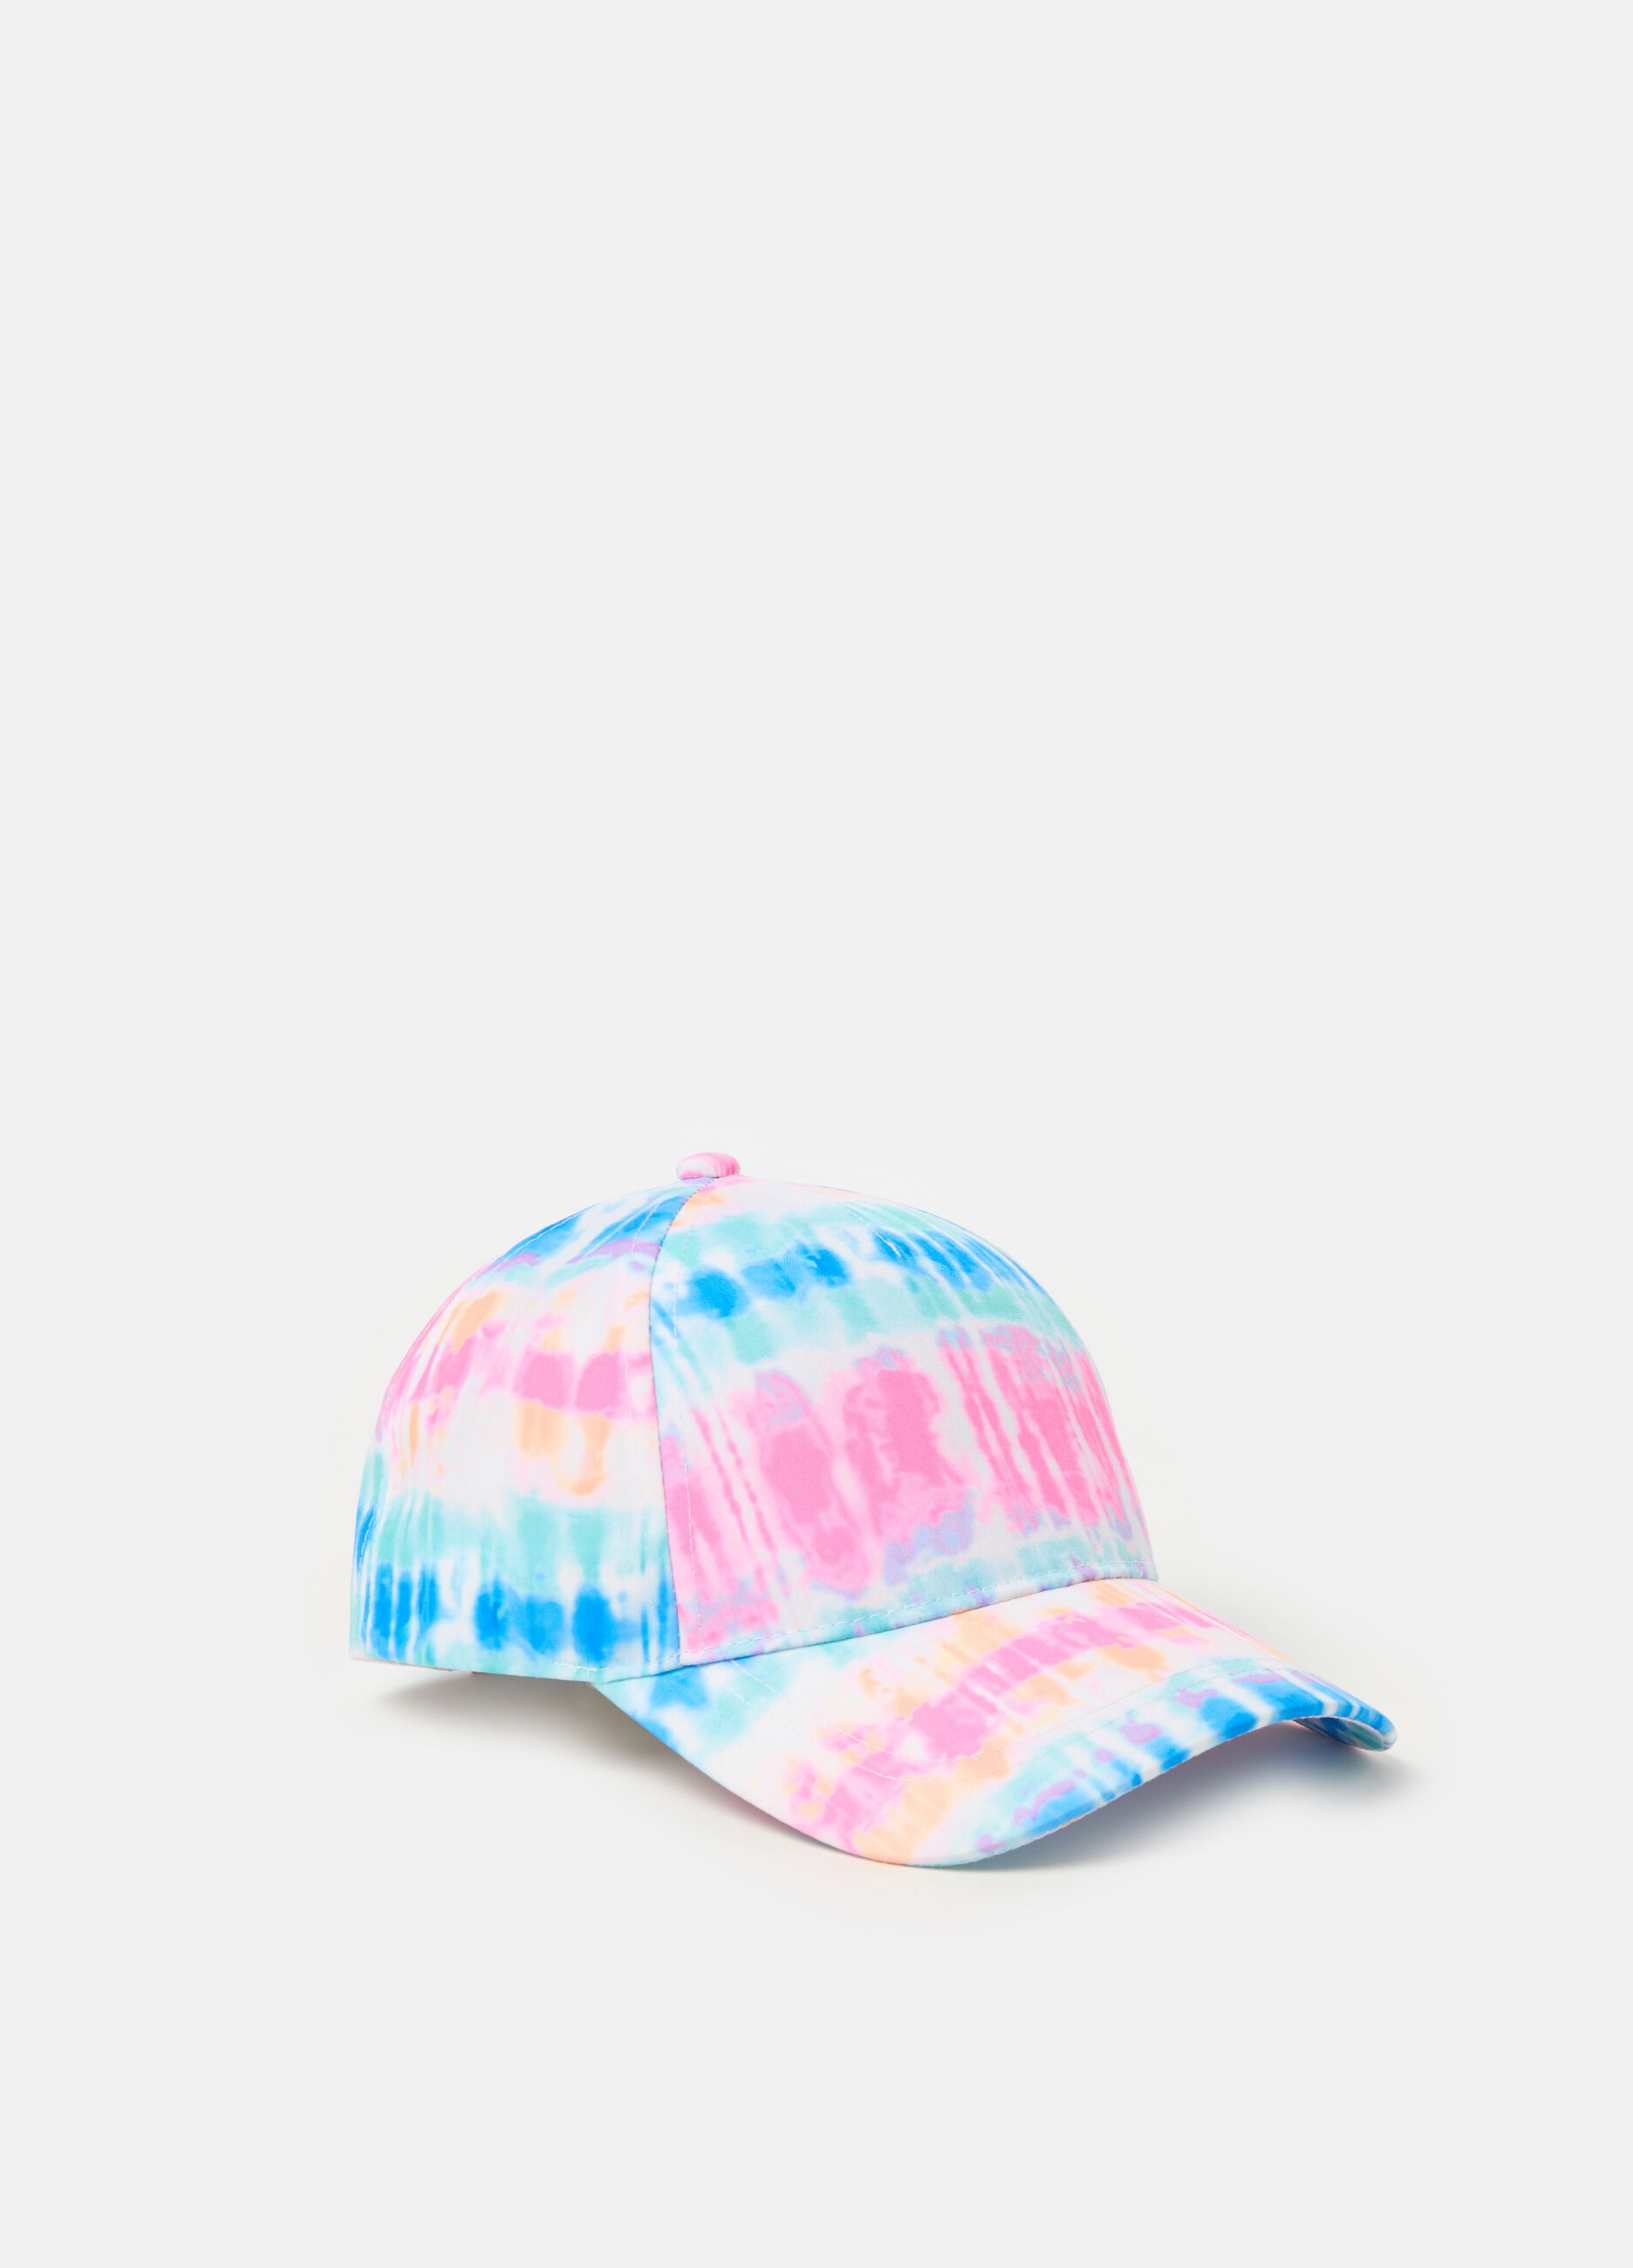 Tie Dye baseball cap